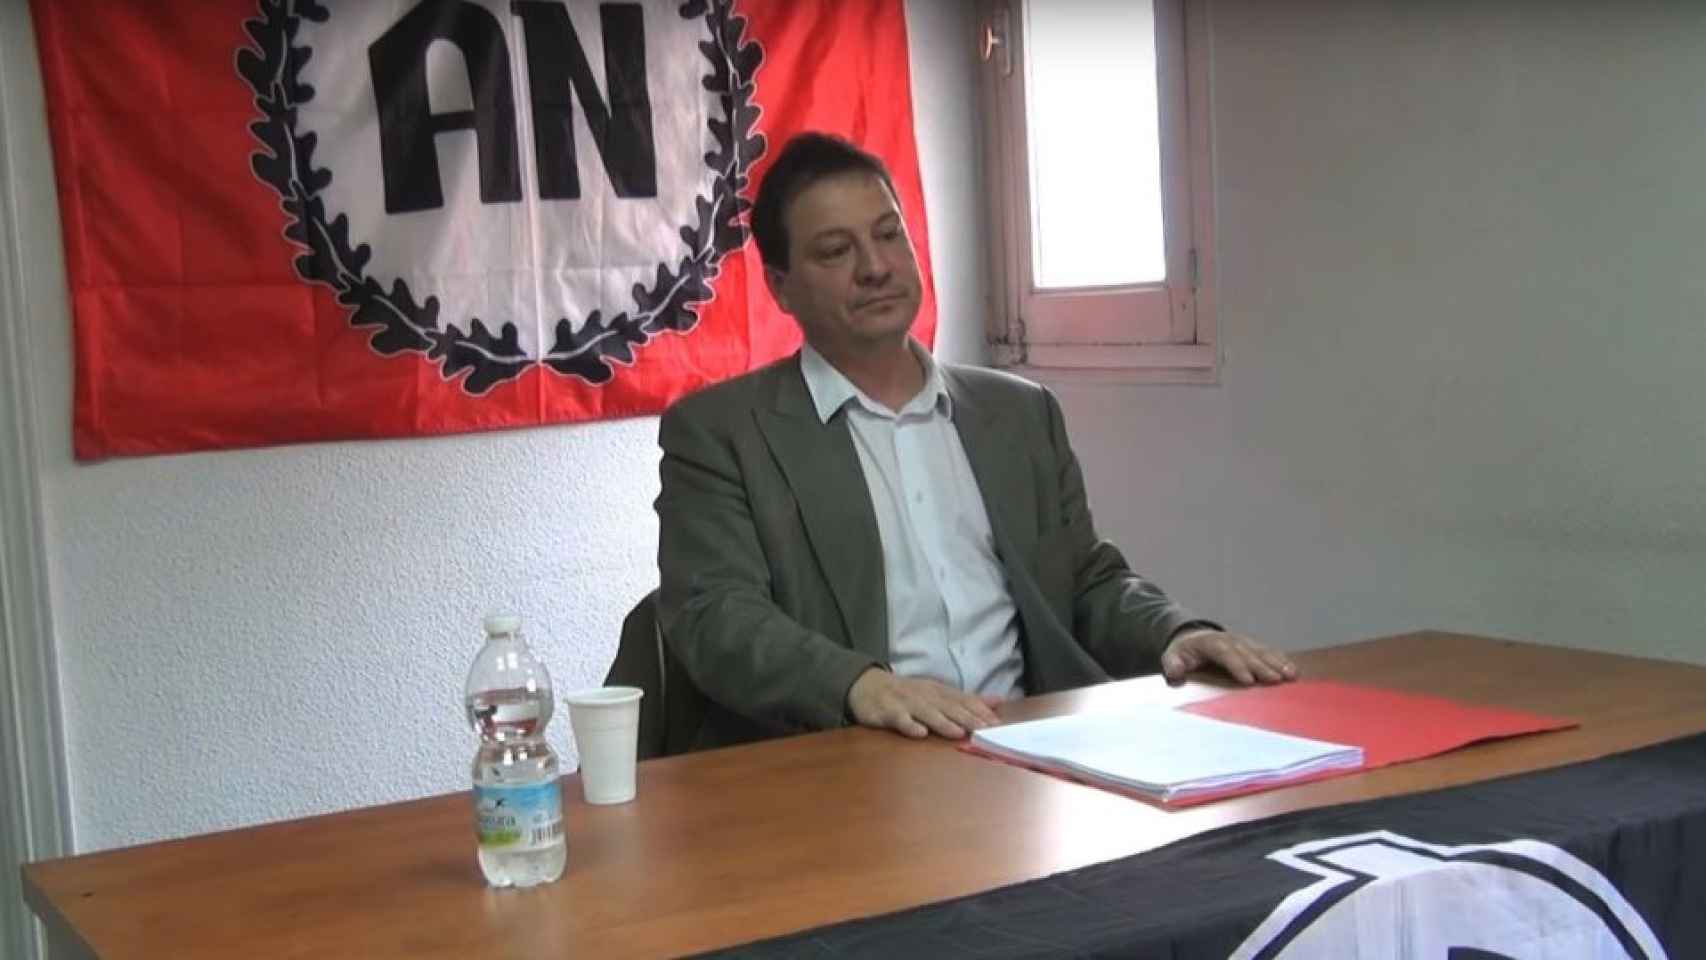 Fernando Paz en una charla del partido neonazi Alianza Nacional.